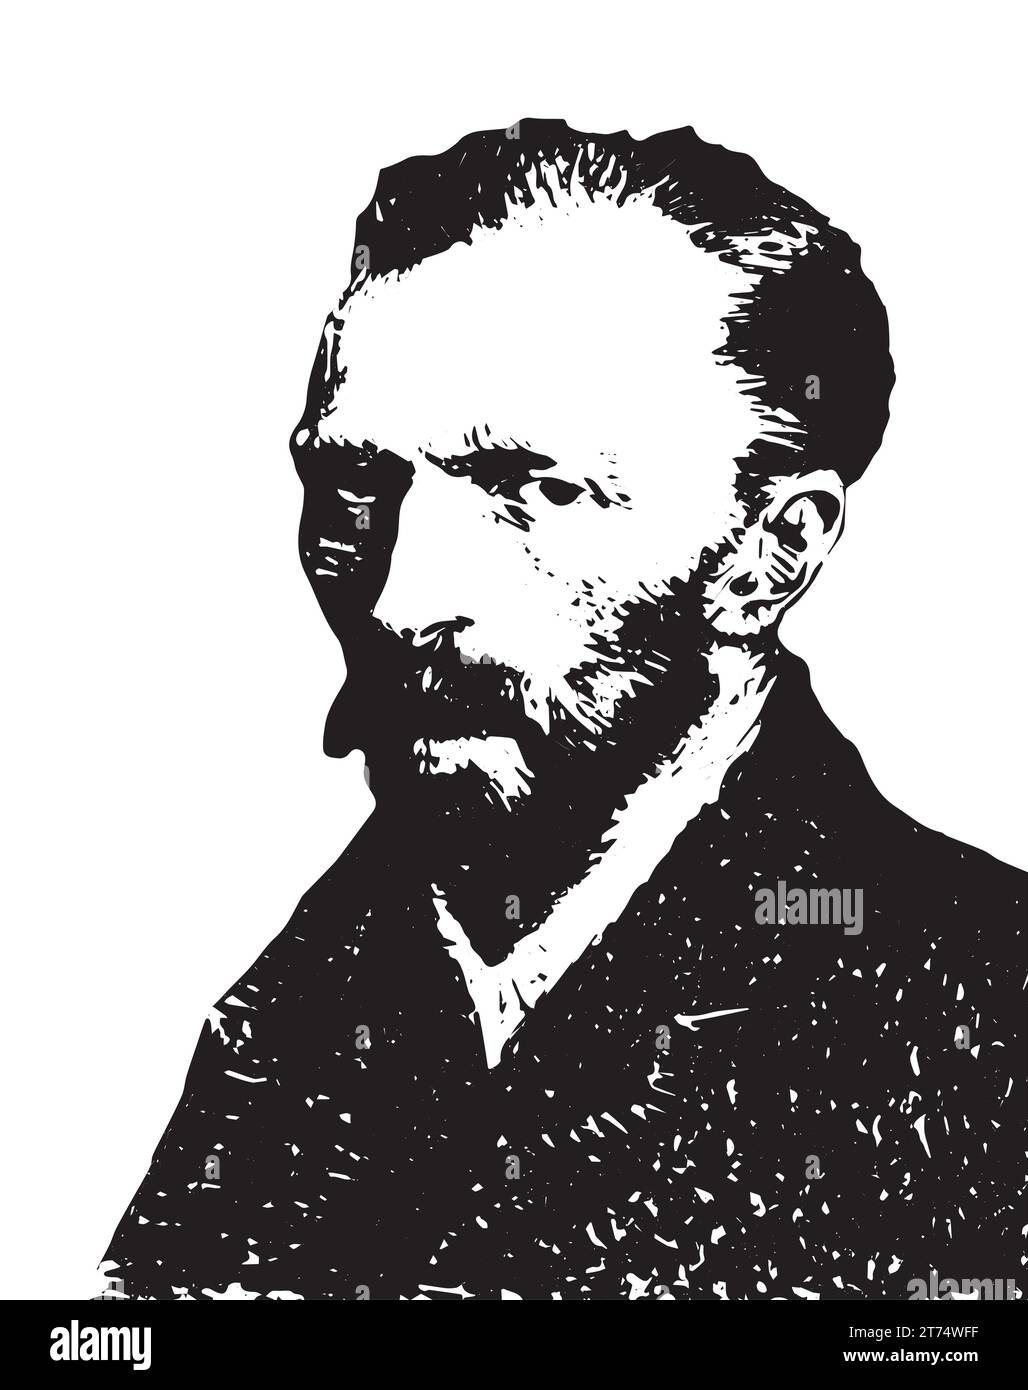 Ritratto della silhouette vettoriale di Vincent Van Gogh in bianco e nero. (1853-1890) pittore post-impressionista olandese noto per 'notte stellata'. Salute mentale. Illustrazione Vettoriale